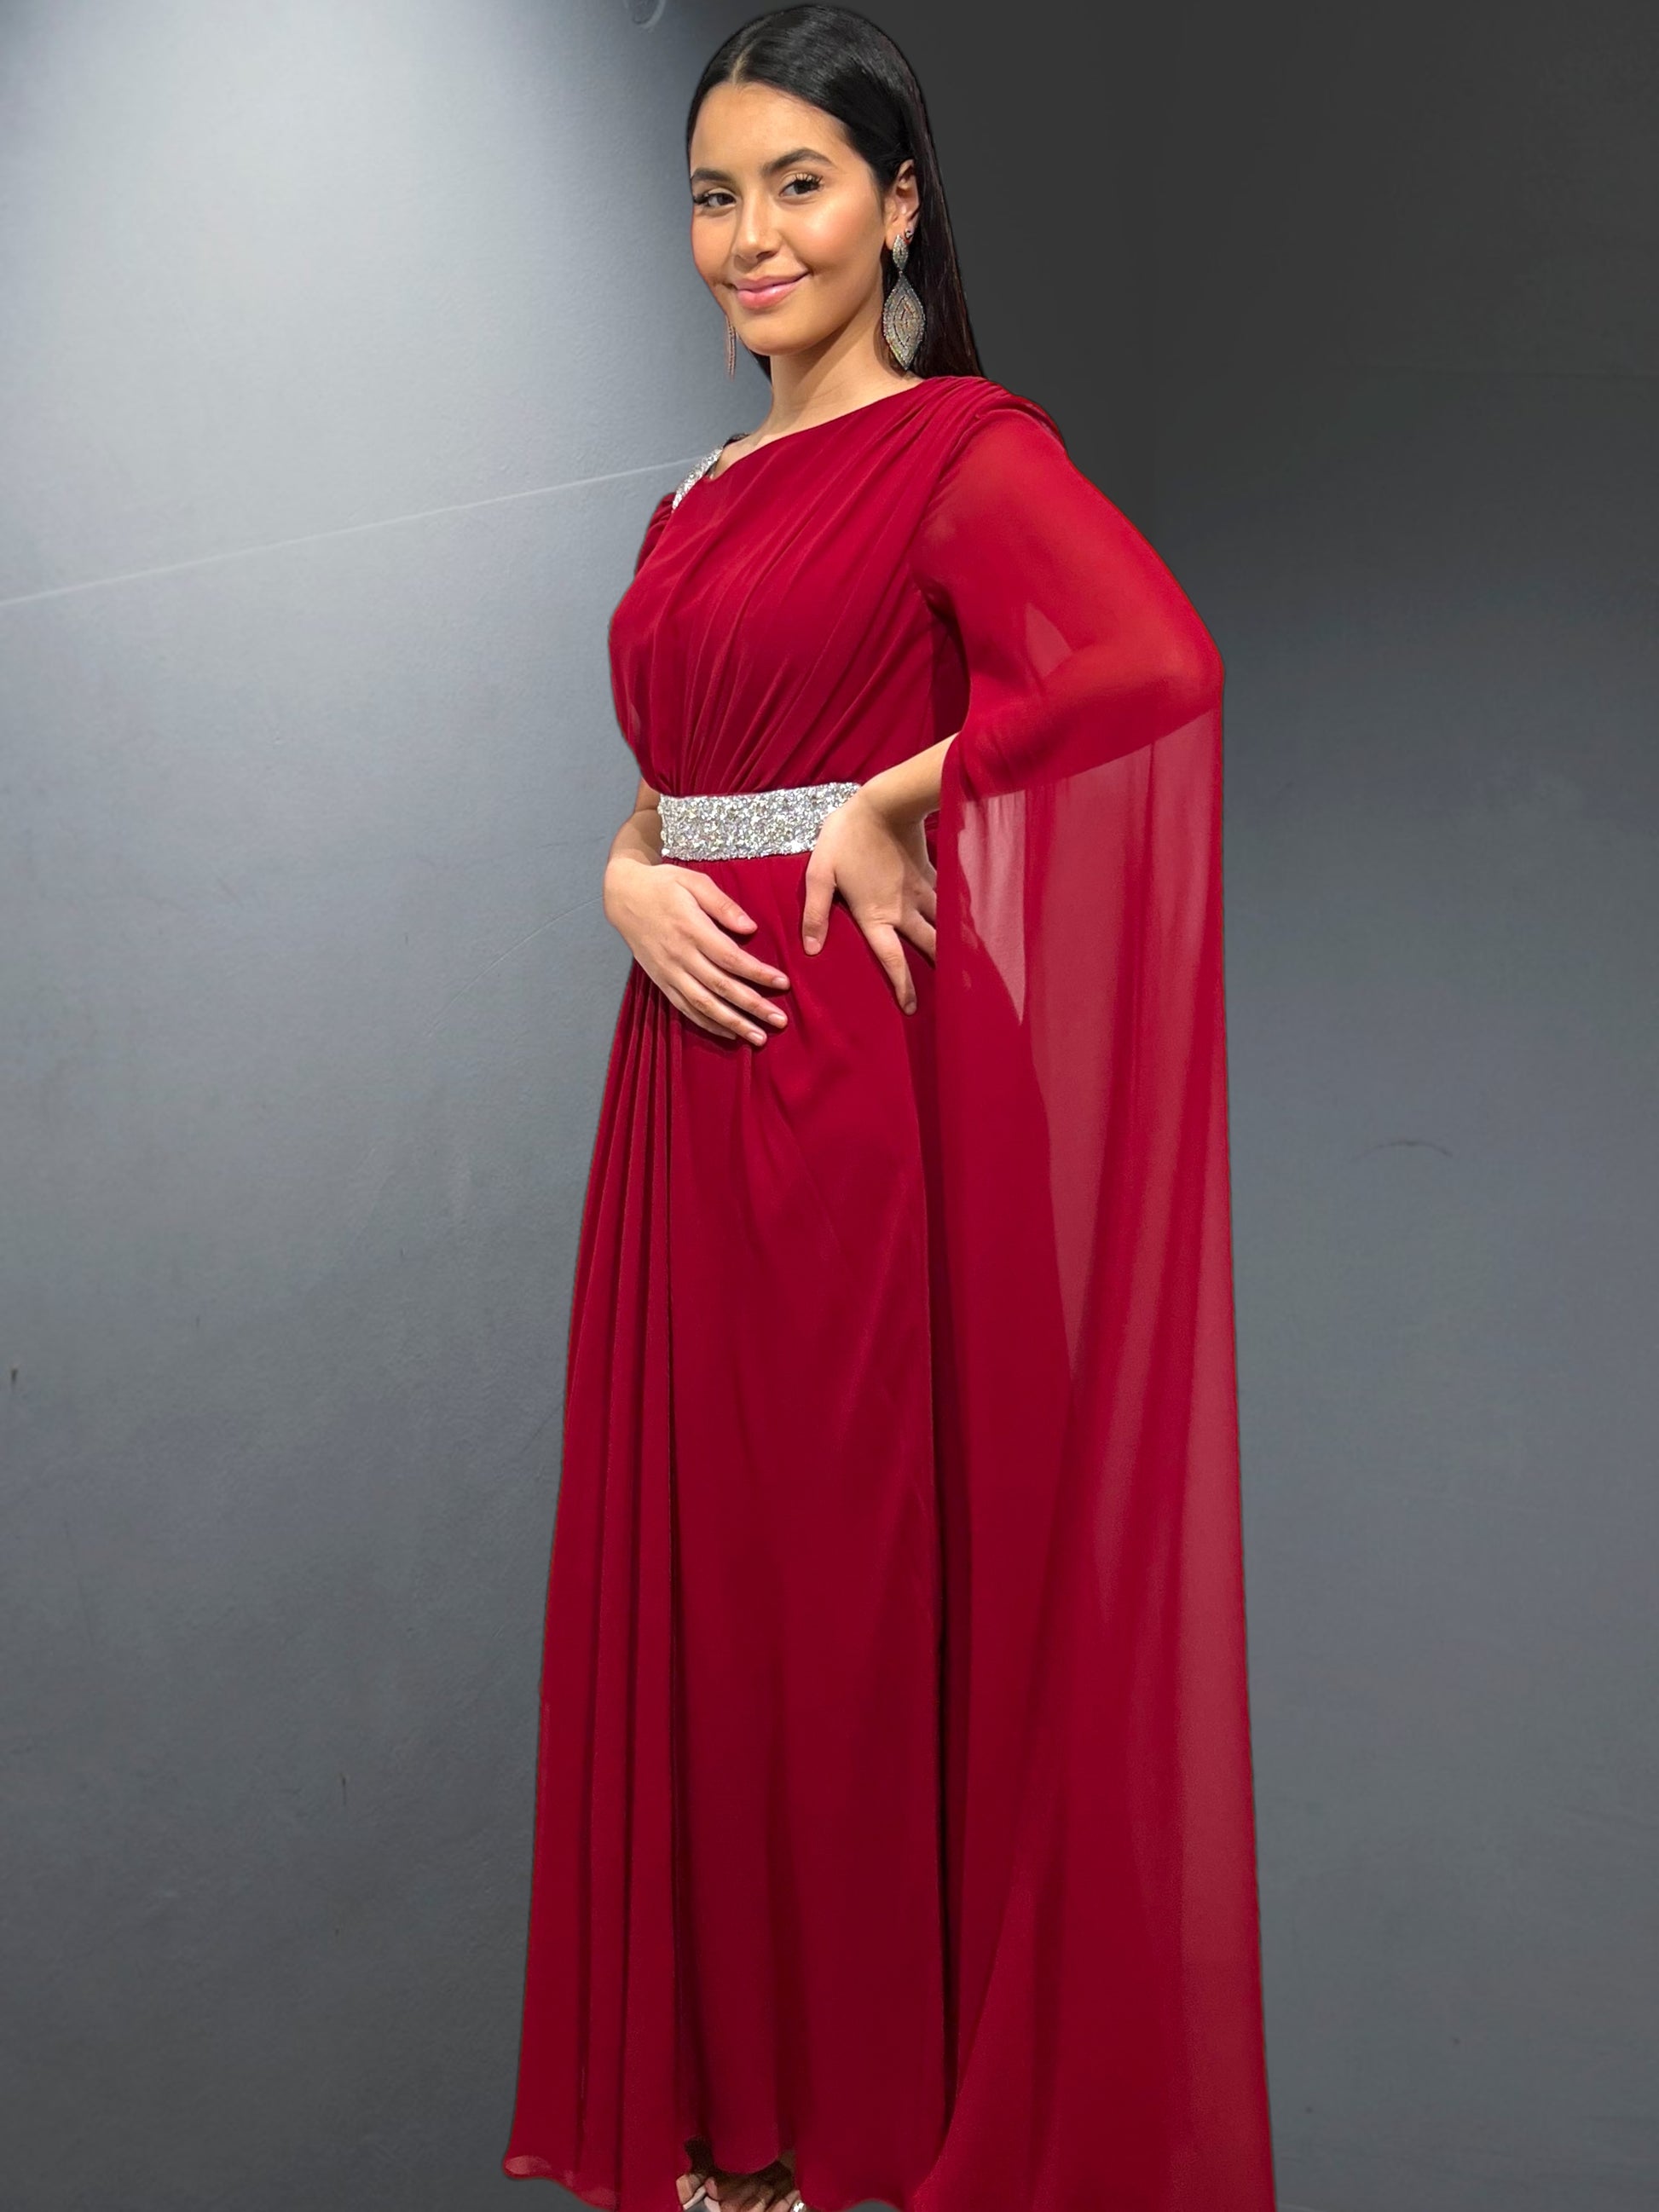 Robe de soirée "Aubervilliers" d'Amir Couture incarne la quintessence de l'élégance - AmirCouture 